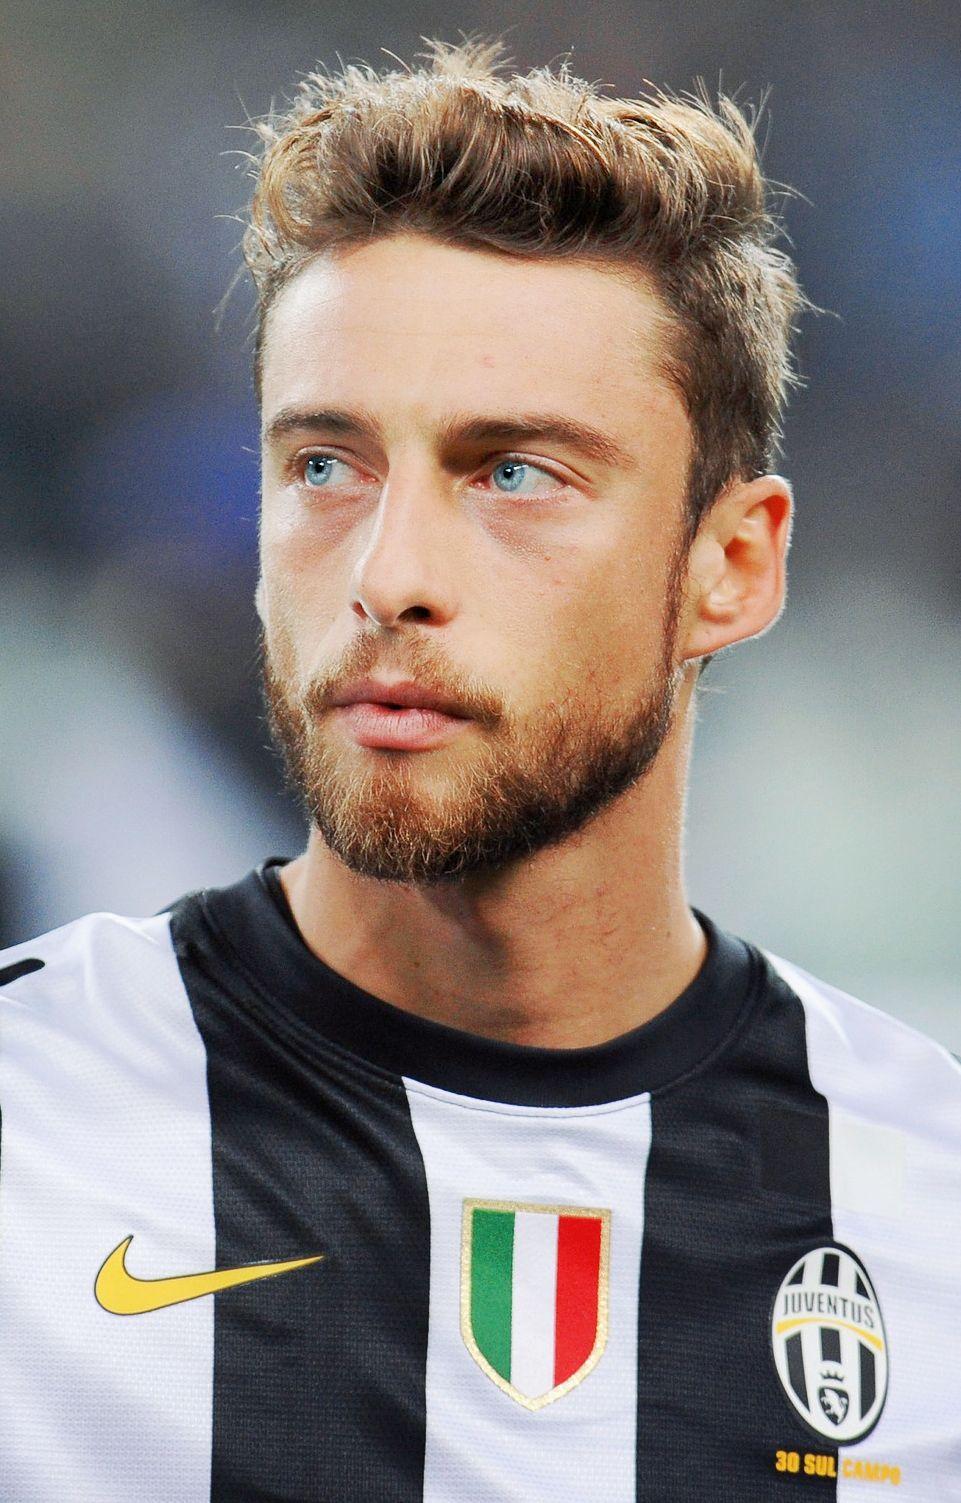 741x1024px Claudio Marchisio (164.63 KB).08.2015